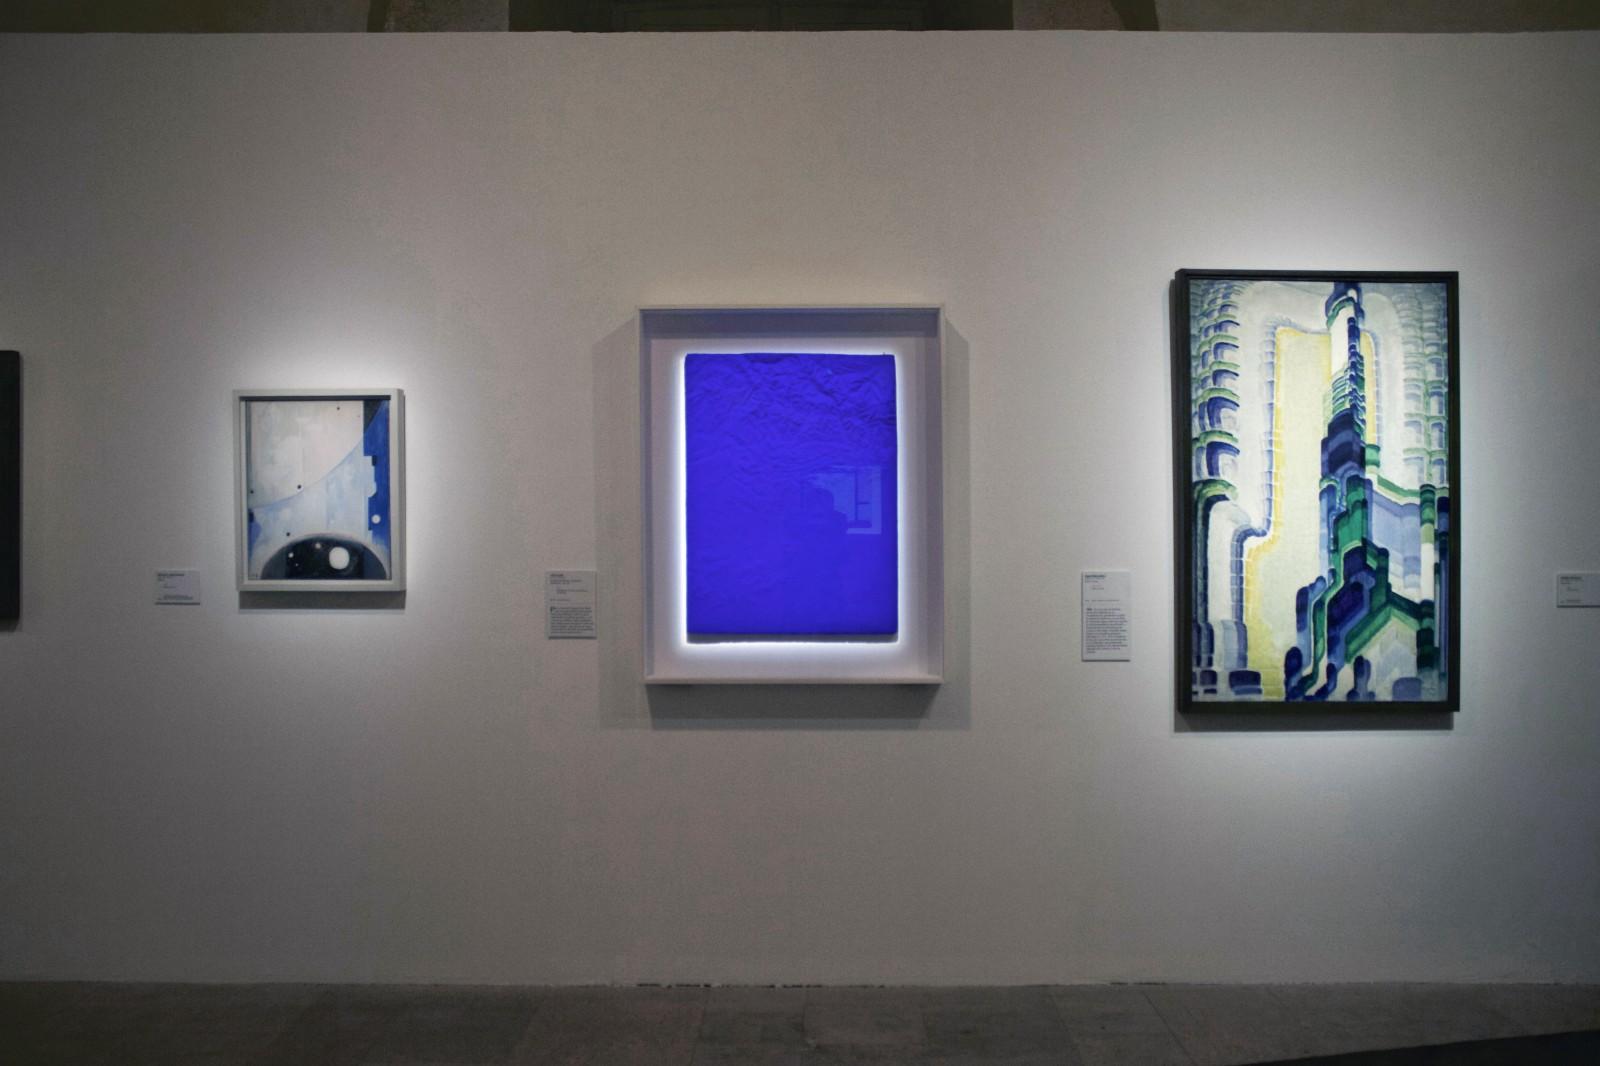 View of the exhibition "Futurs... Matisse, Miro, Calder...", Centre de la Vieille Charité, 2015 (RP 10)